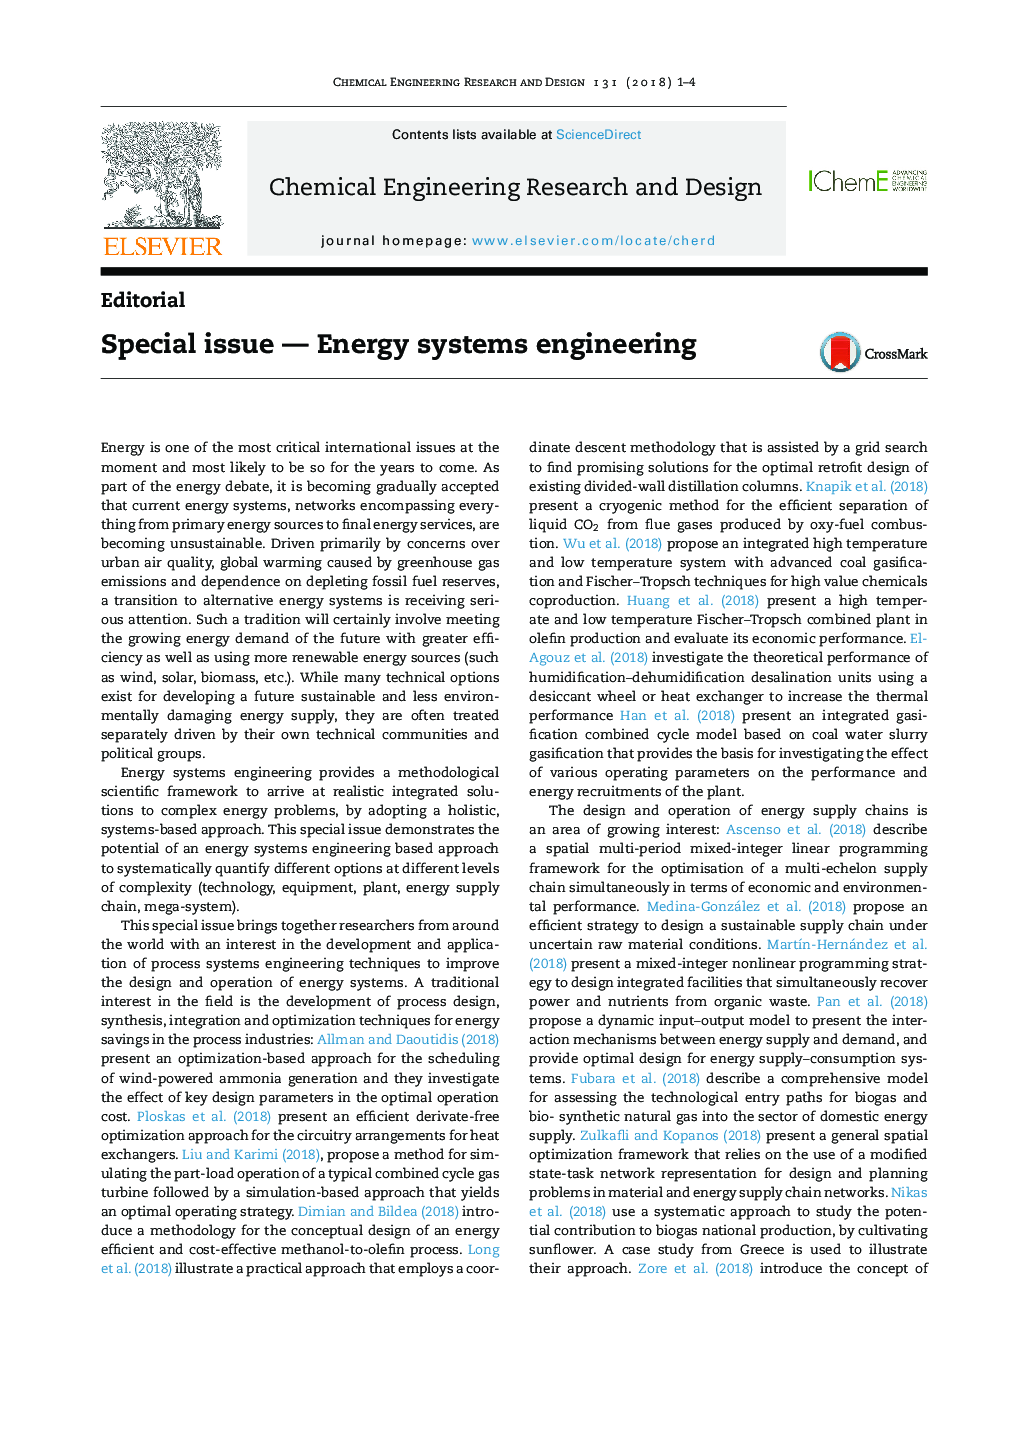 موضوع ویژه - مهندسی سیستم های انرژی 